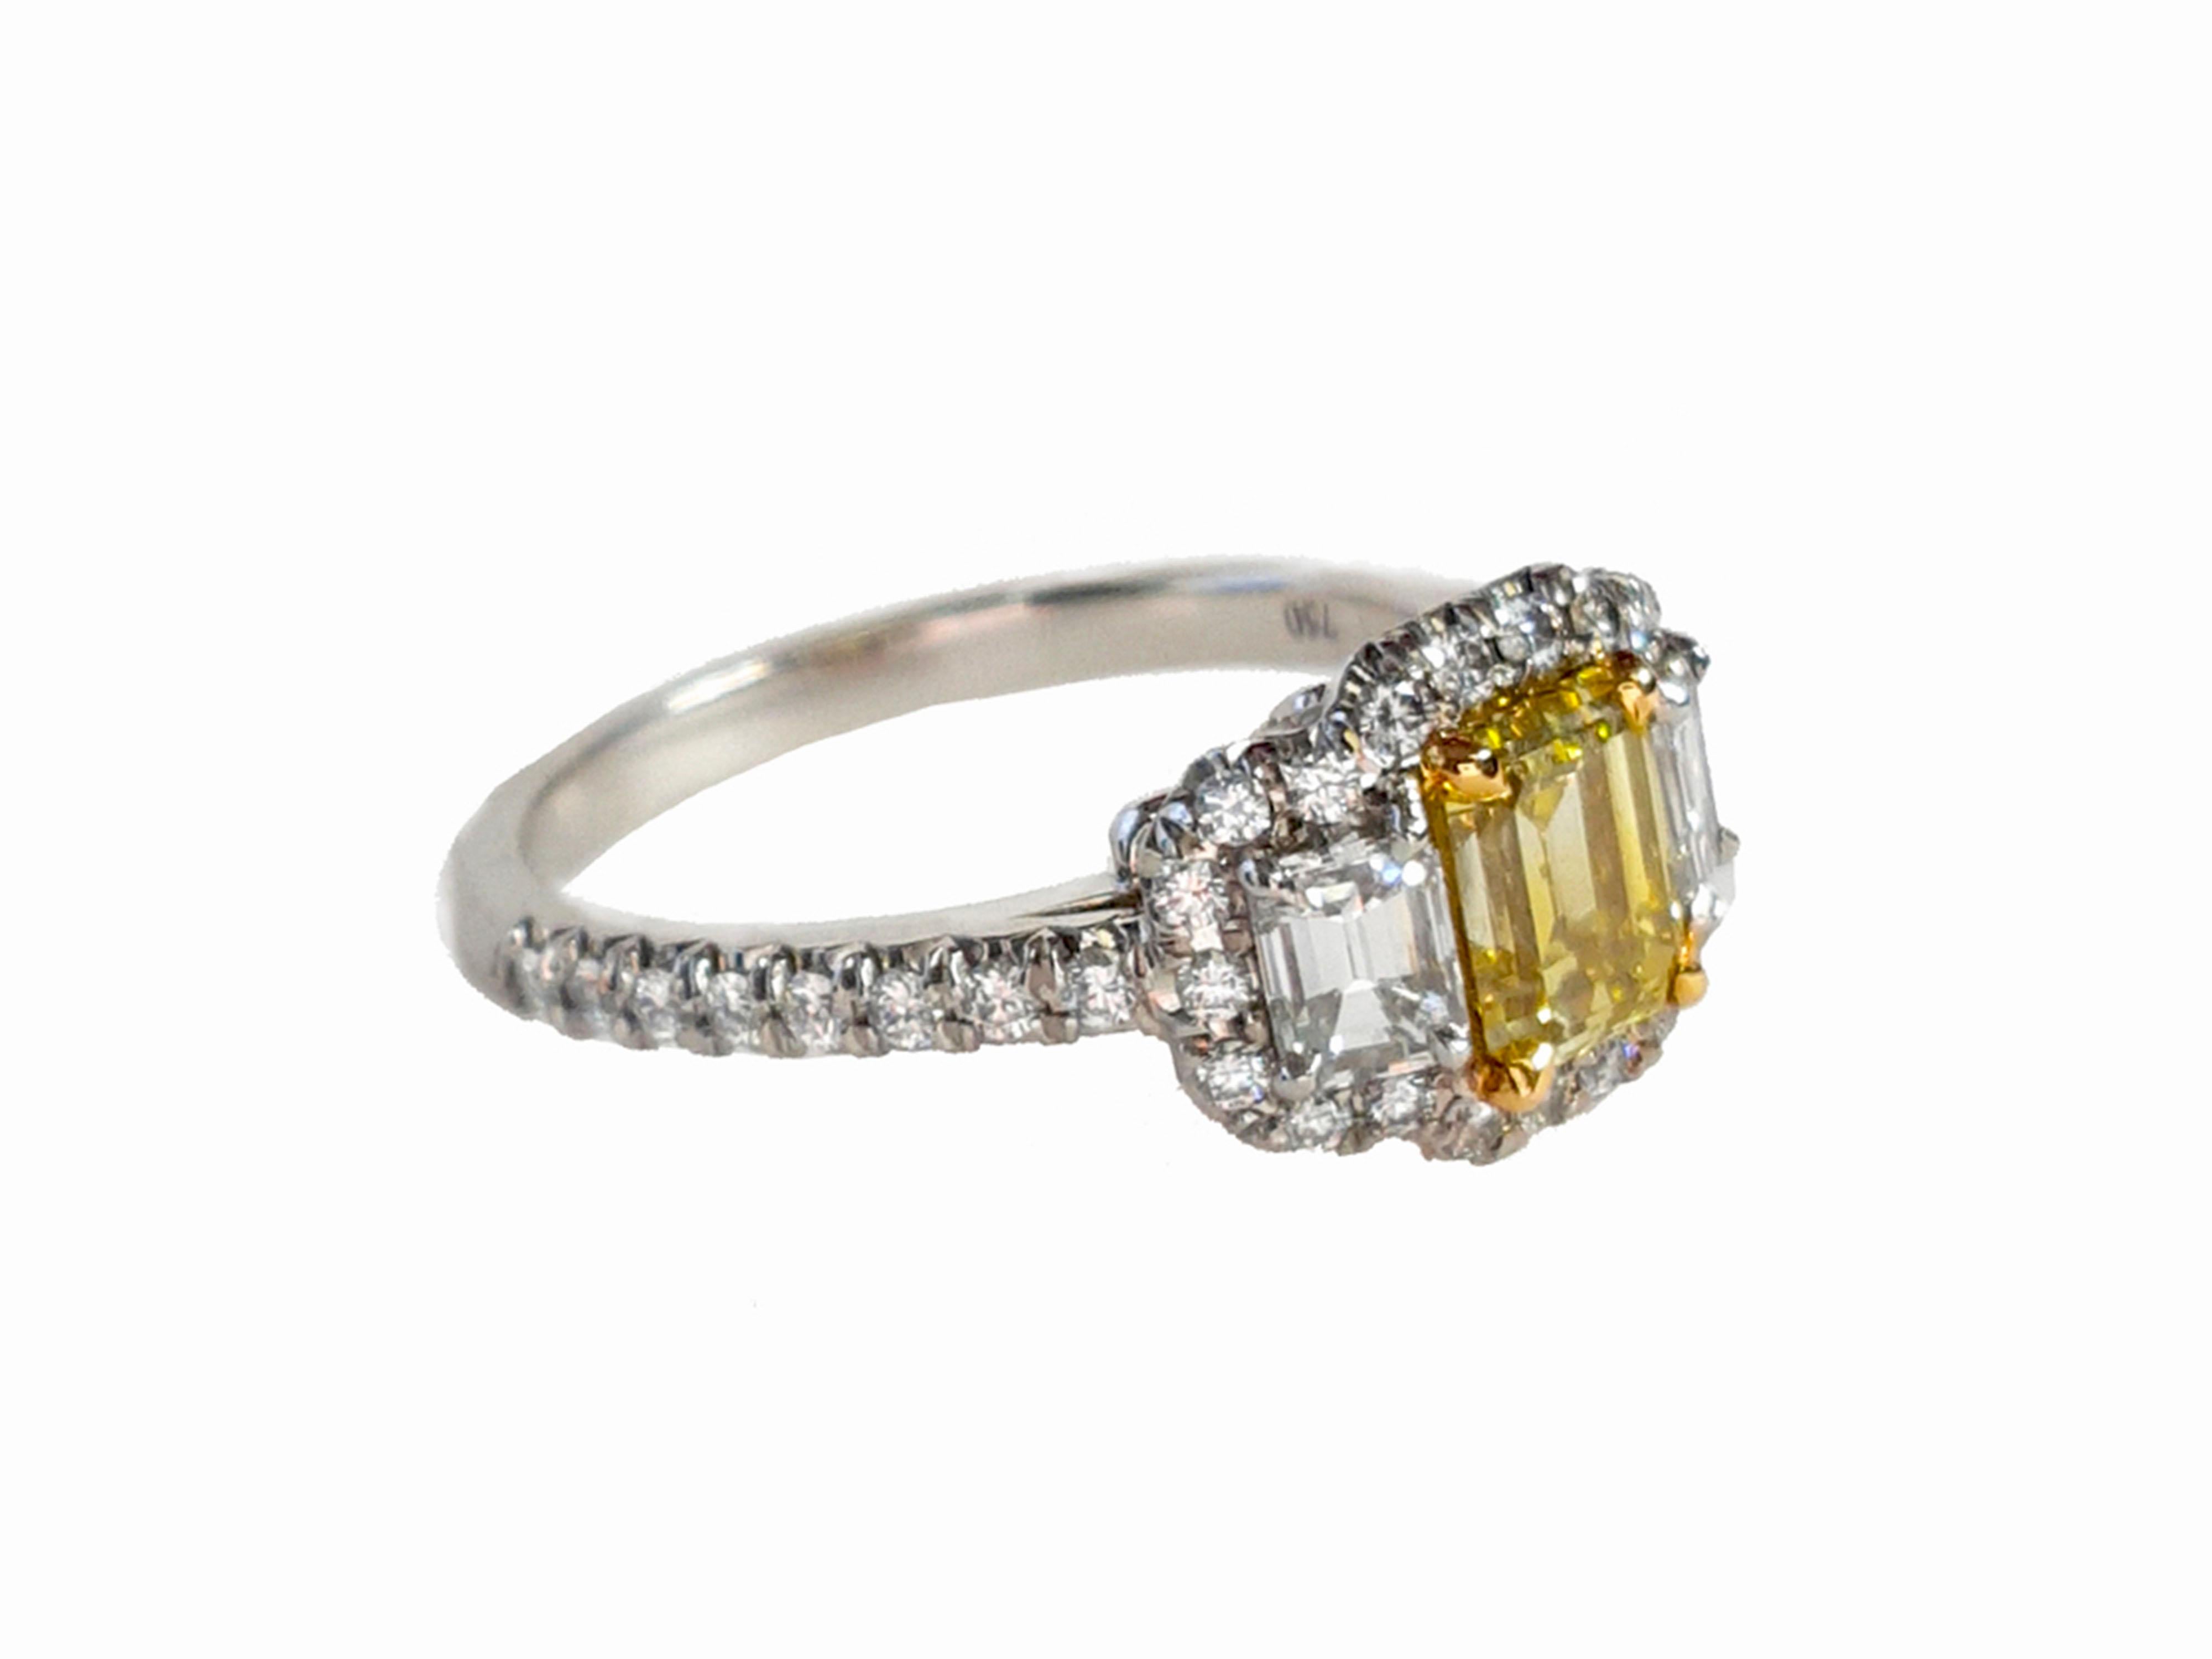 Ein atemberaubender Drei-Steine-Verlobungsring, 1,01 Karat Fancy Intense Yellow Emerald cut Diamant. Flankiert von zwei Diamanten im Smaragdschliff mit einem Gesamtgewicht von 0.51 Karat. Das klassische Design bringt die Schönheit des Mittelsteins